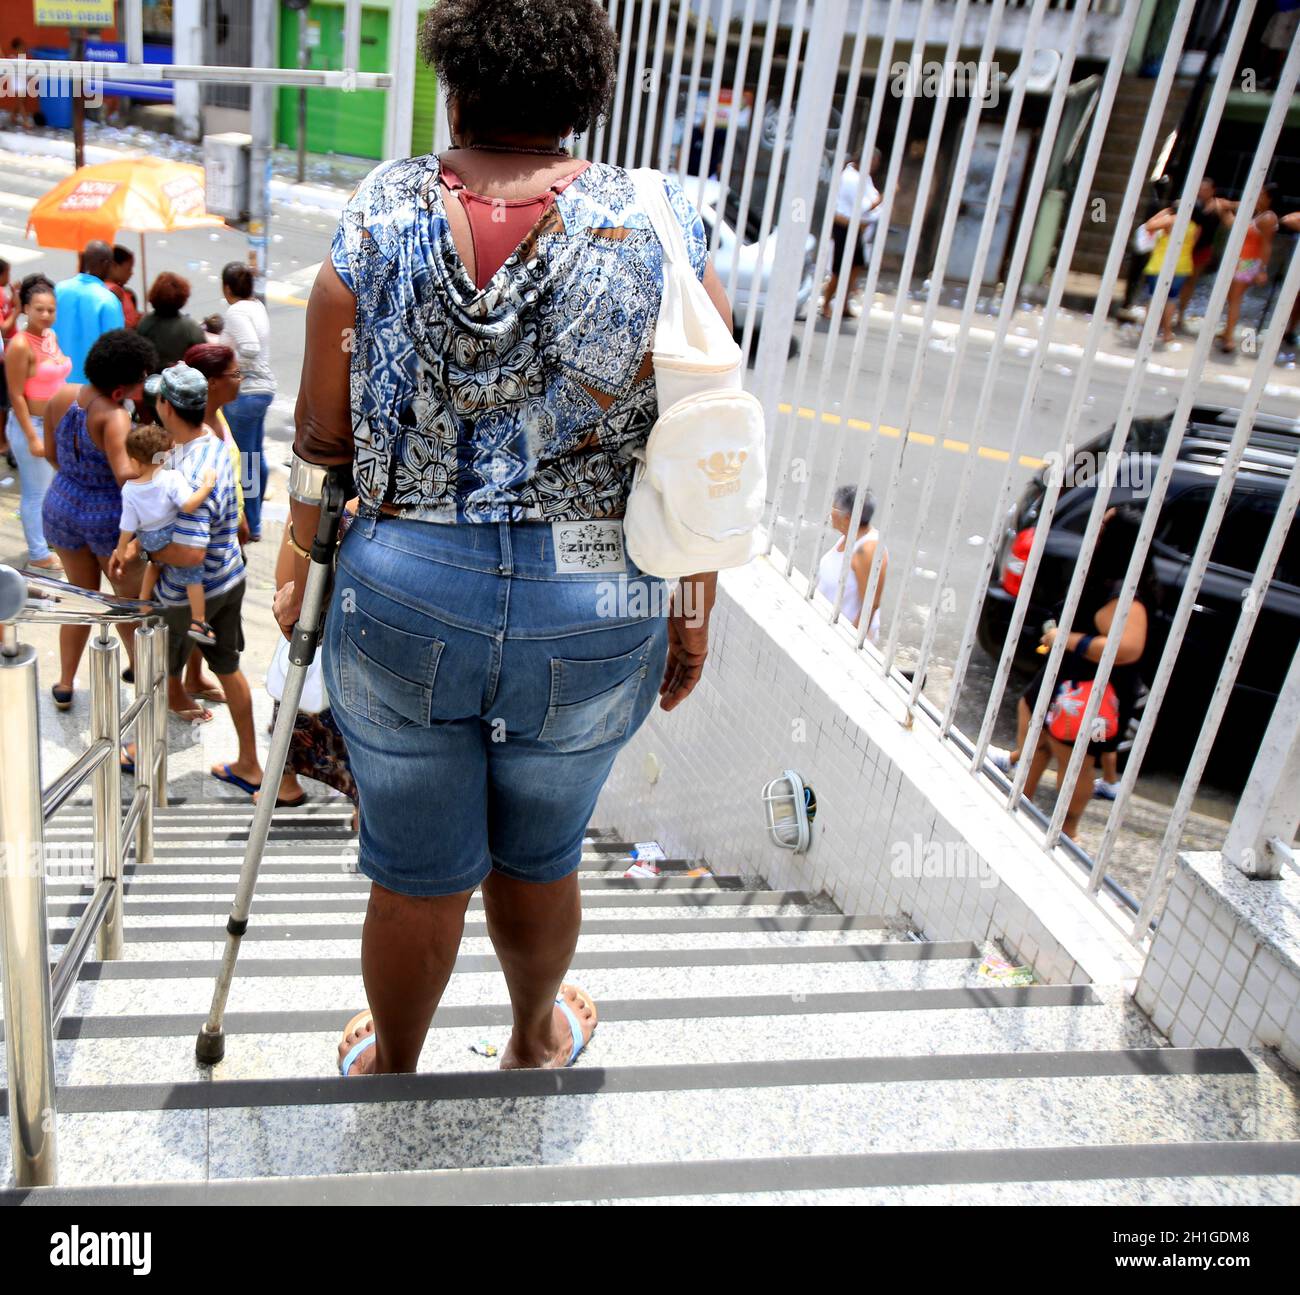 salvador, bahia / brésil - 4 septembre 2017: Les gens utilisant un mulete est vu pendant la descente des escaliers dans la ville de Salvador.*** Légende locale *** Banque D'Images